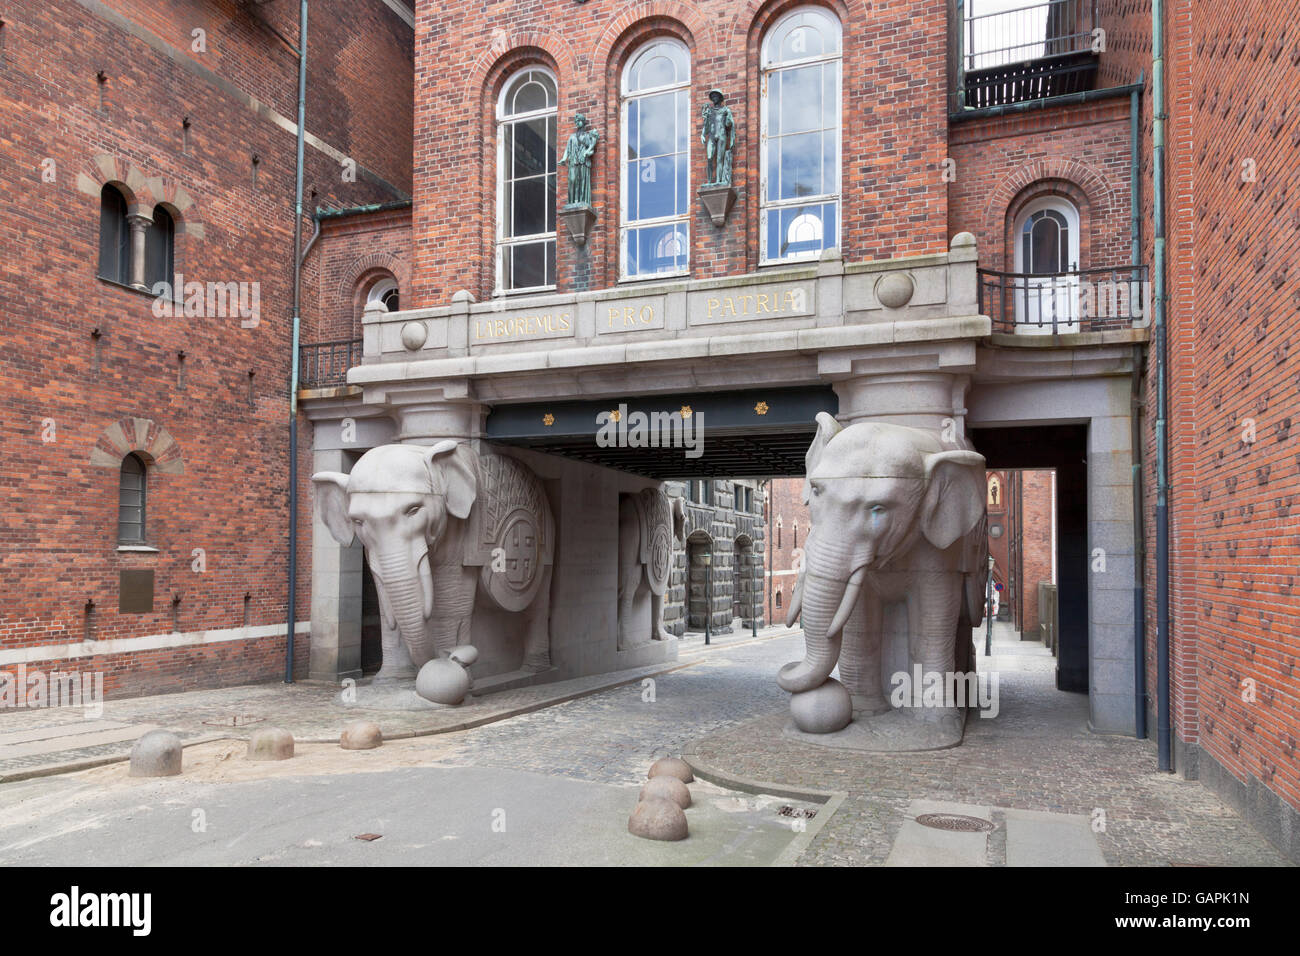 Elefantporten, la porta degli Elefanti, l'entrata storica dal lato Valby alla vecchia zona della birreria Carlsberg a Copenhagen, Danimarca. Foto Stock